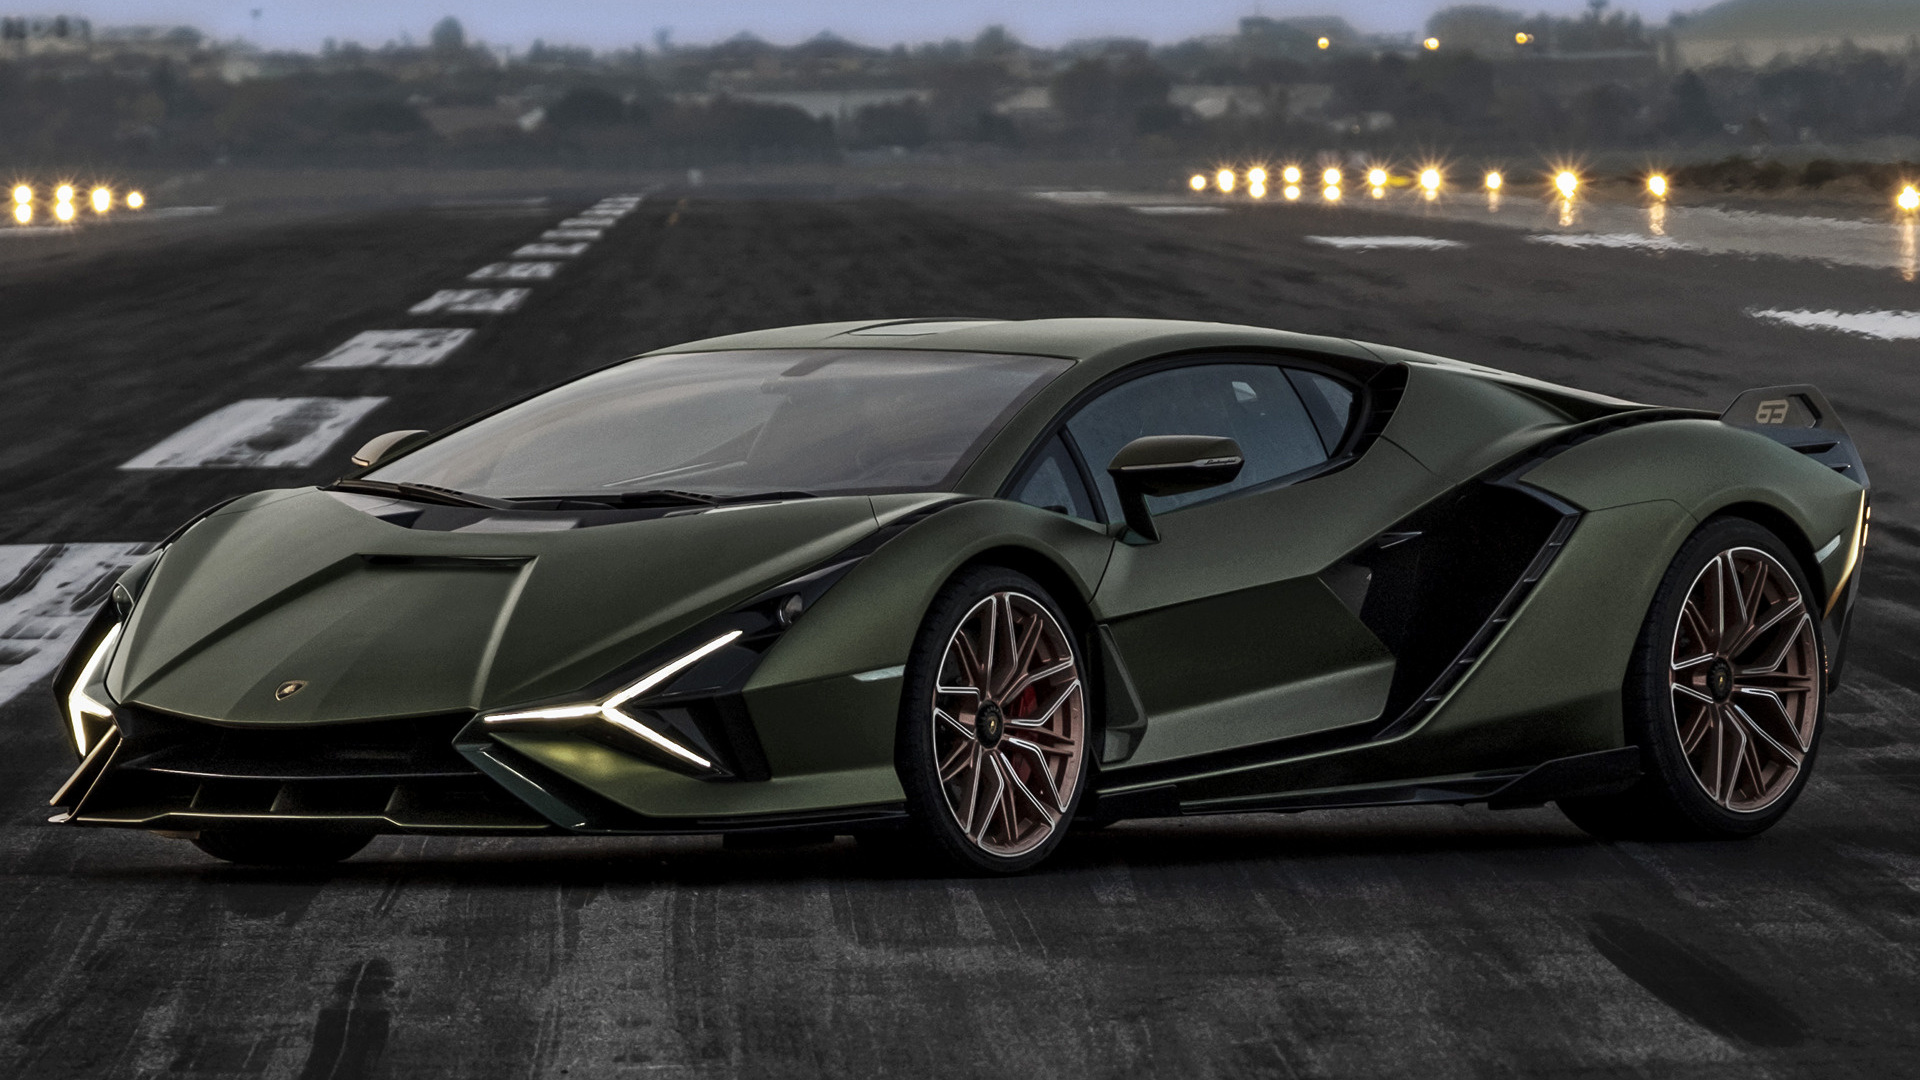 2020 Lamborghini Sian FKP 37 - Wallpapers and HD Images | Car Pixel